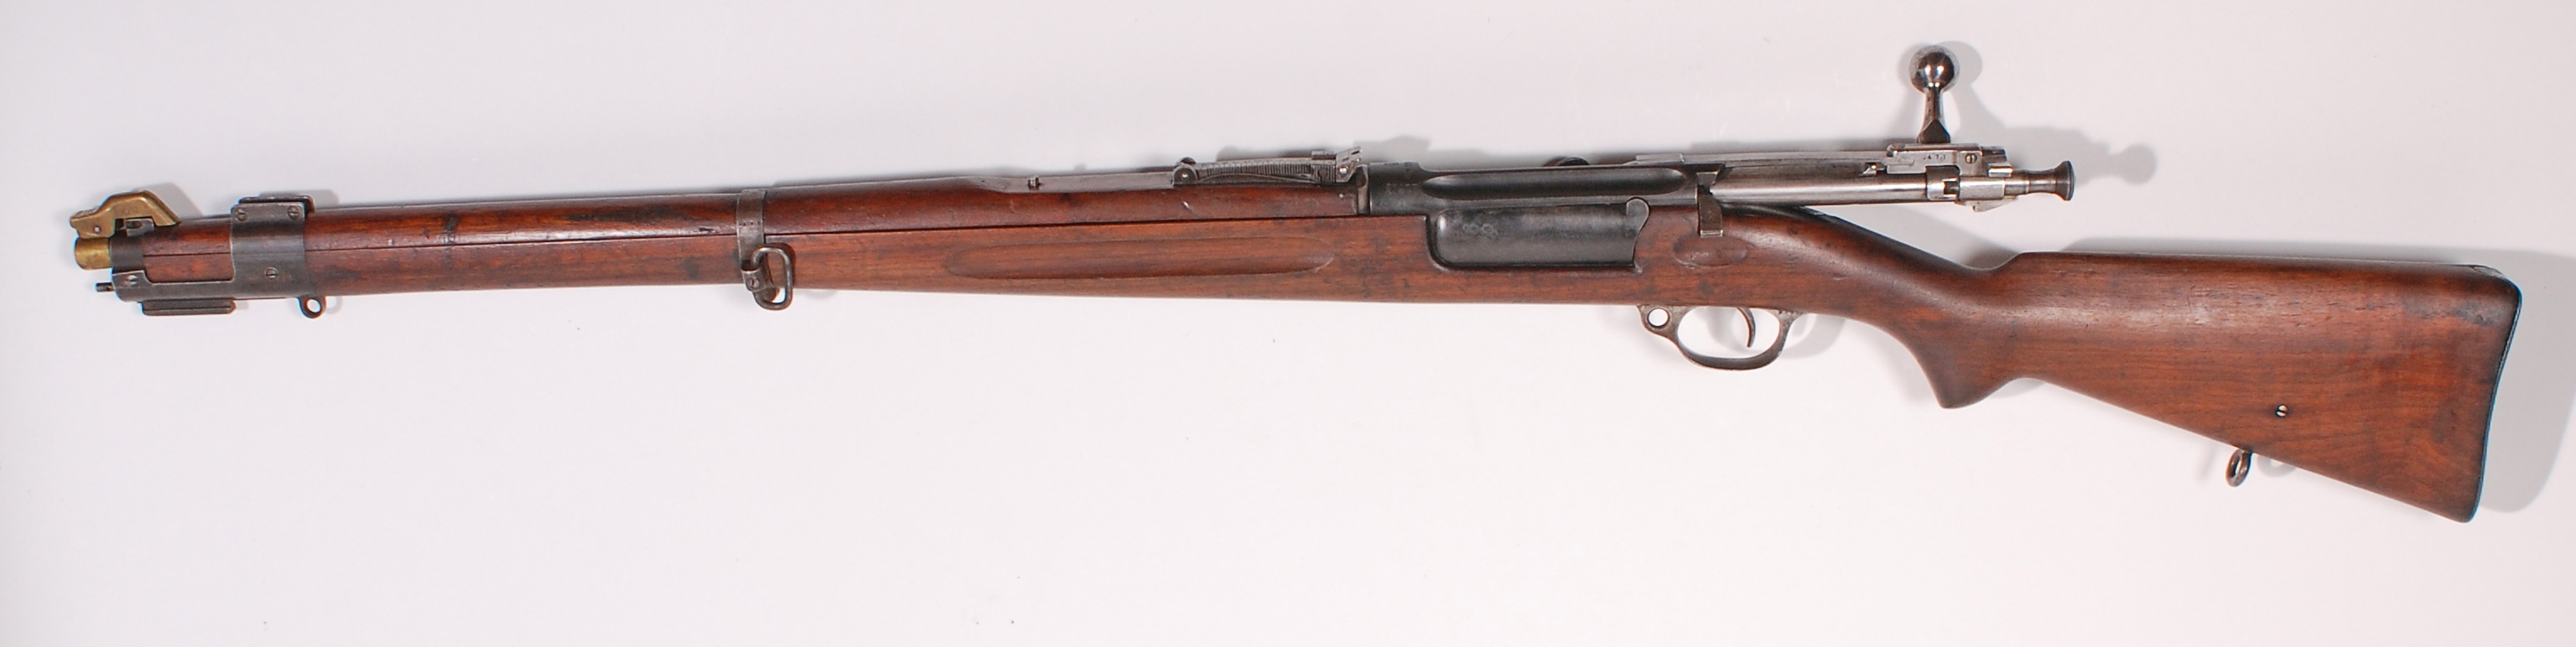 ./guns/rifle/bilder/Rifle-Kongsberg-Krag-M1912-22-27477-2.jpg